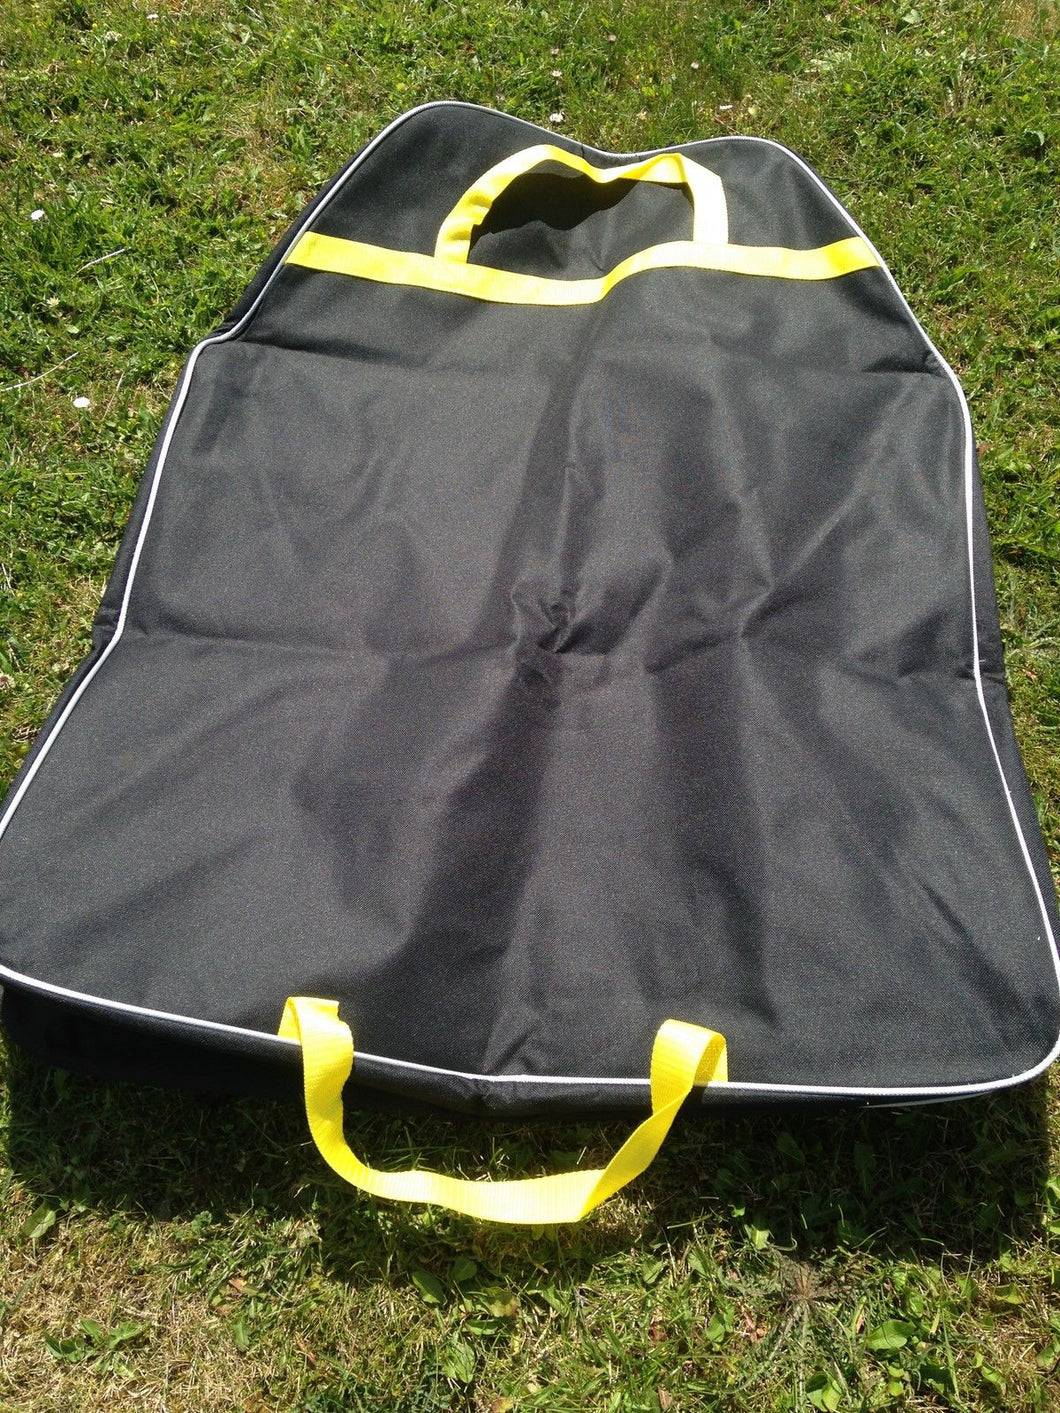 JL Golf Waterproof Electric Trolley Cover / Bag